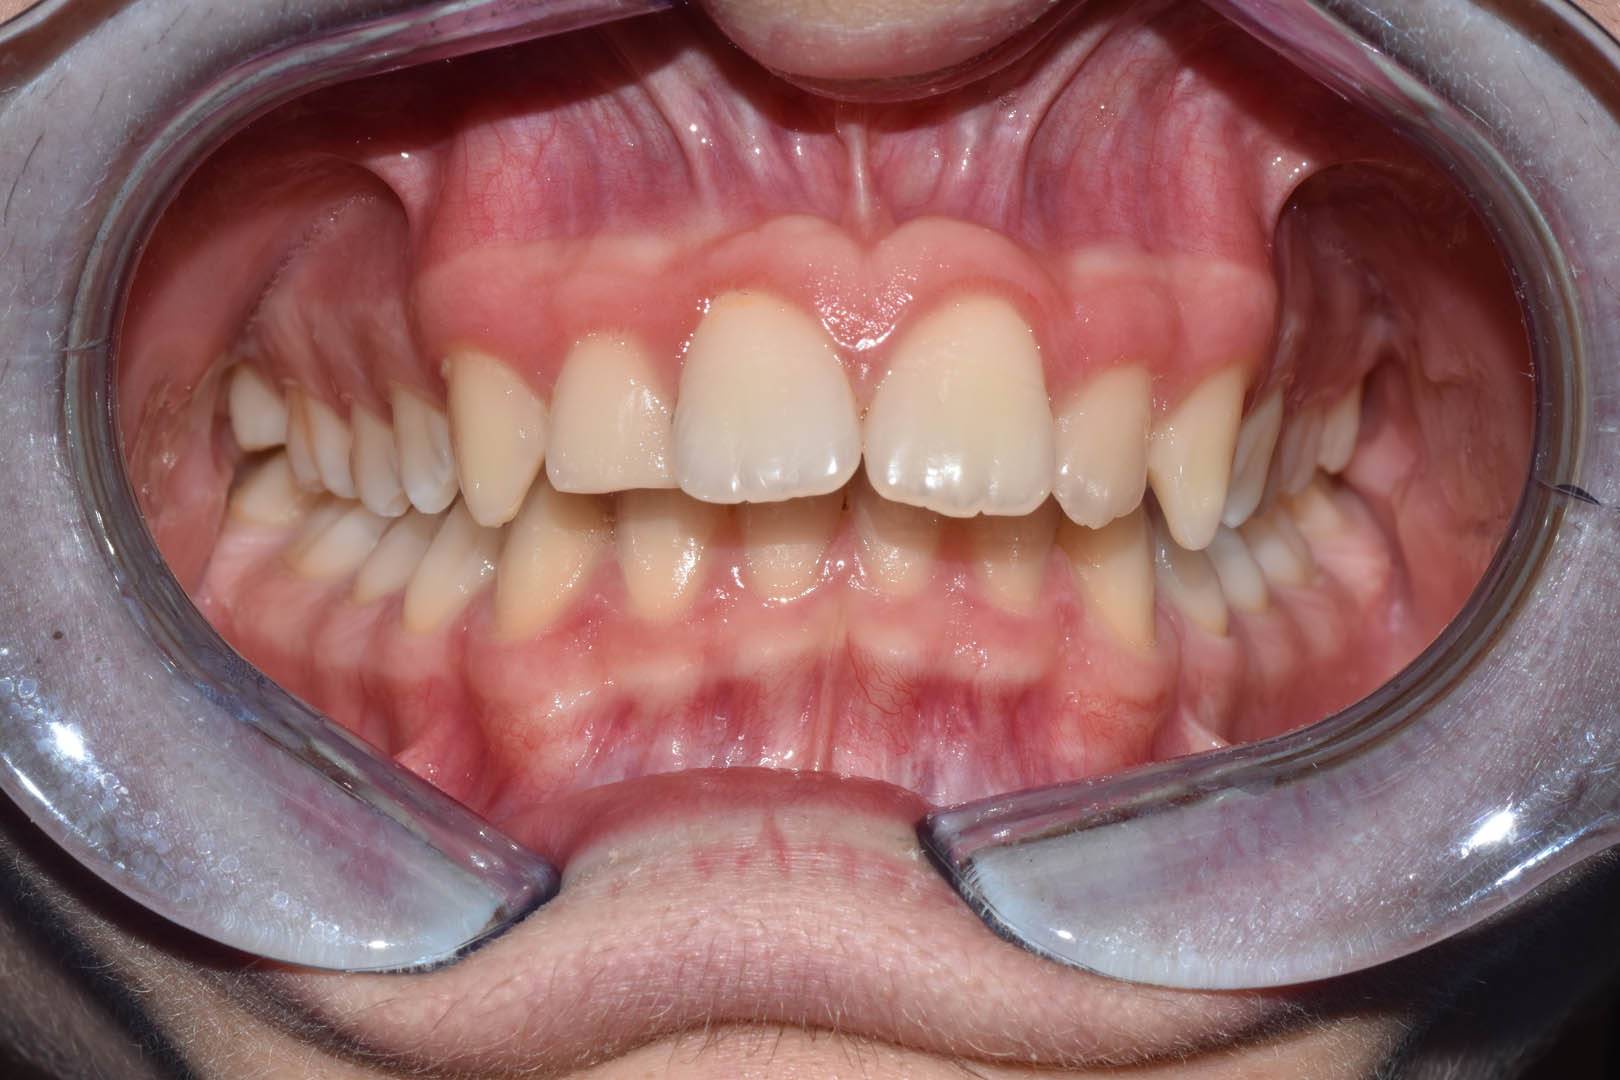 odontocentro-monza-brianza-casi-clinici-ortodonzia-bimascellare-20-mesi (1)